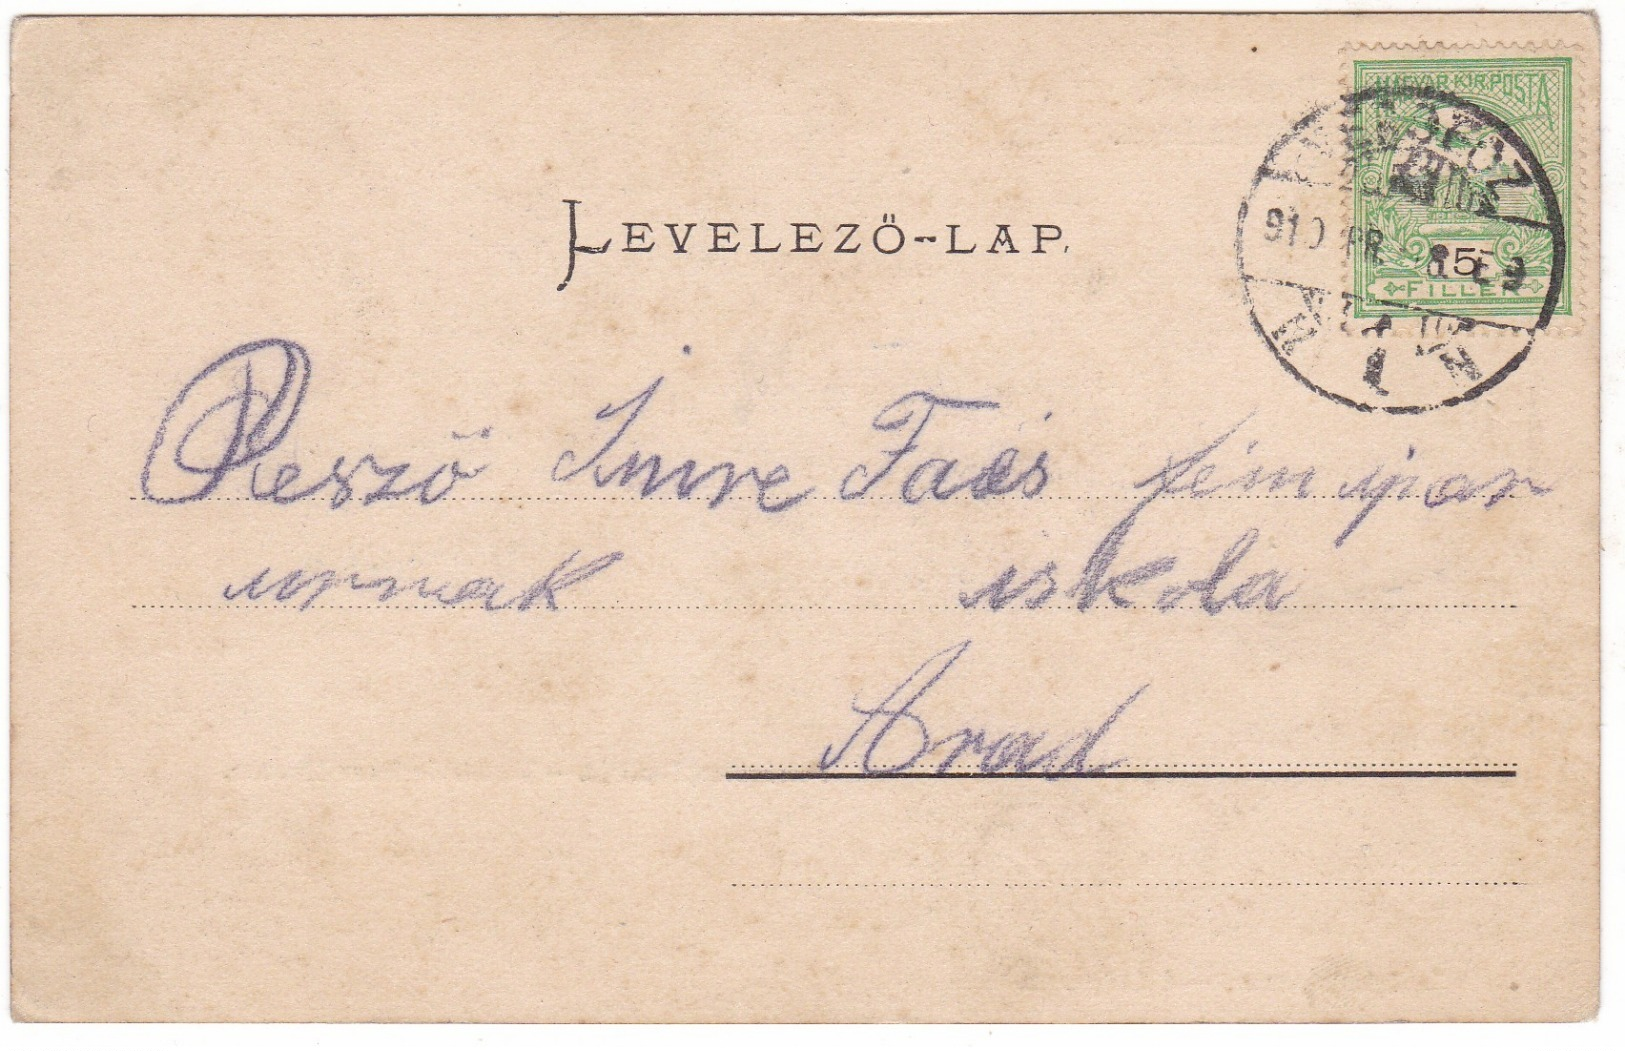 # 10716 Serbia, Versecz Older Greetings Postcard Mailed 1910: School Street, Fehhértemplom Street, Animated - Serbien